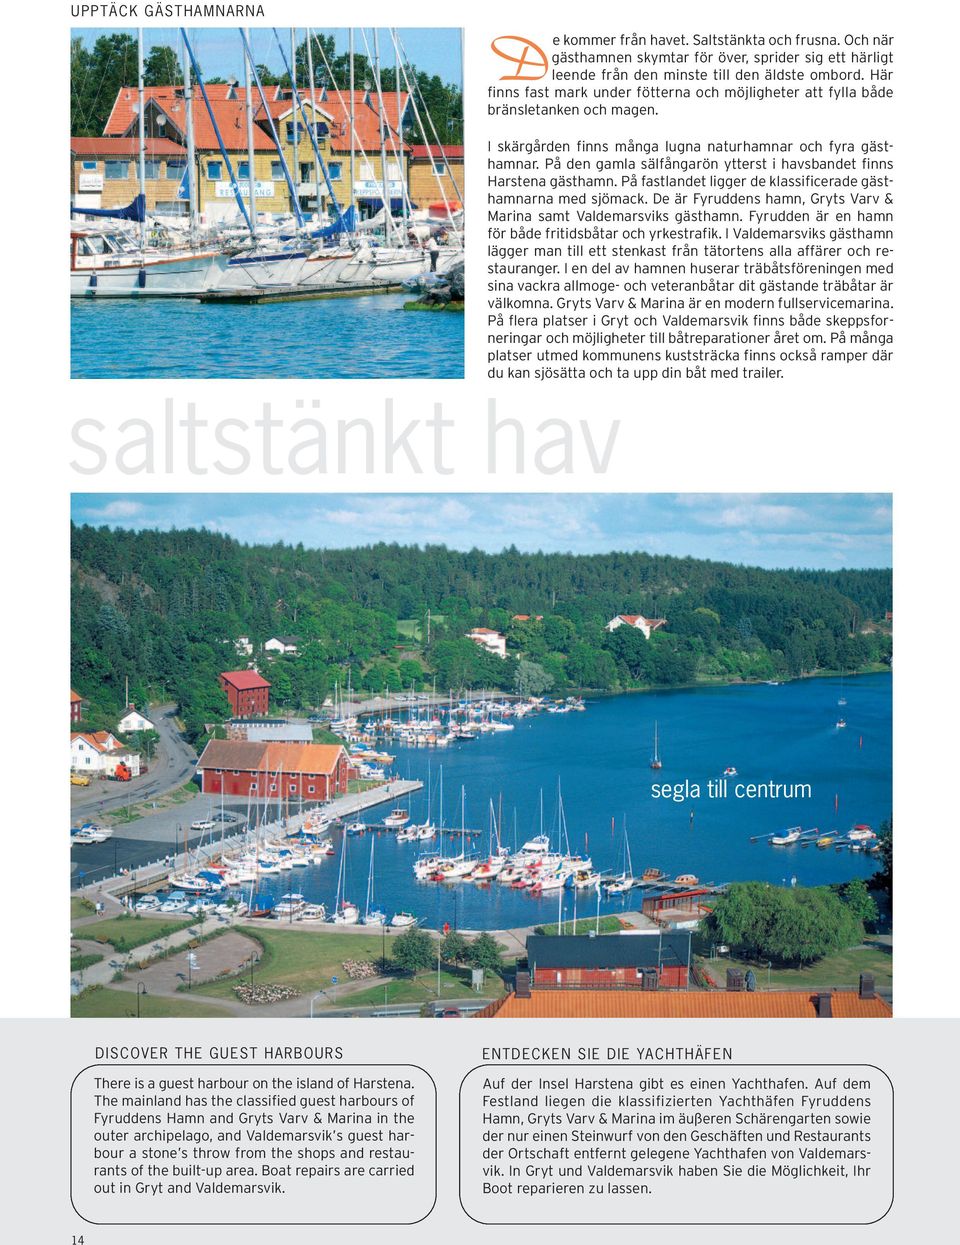 På den gamla sälfångarön ytterst i havsbandet finns Harstena gästhamn. På fastlandet ligger de klassificerade gästhamnarna med sjömack.